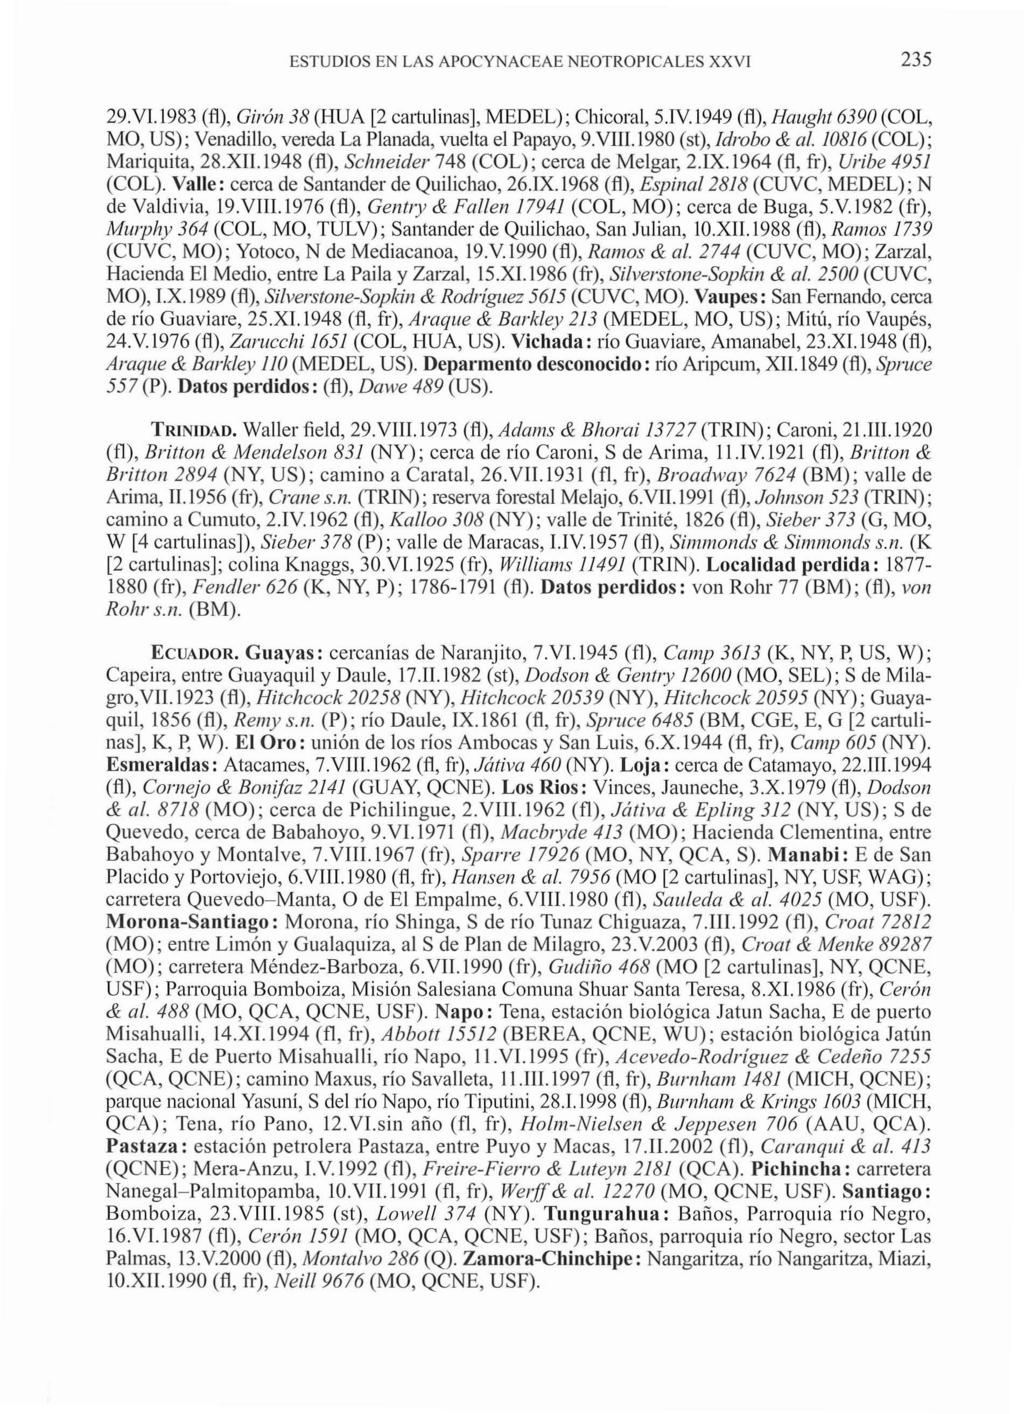 ESTUDIOS EN LAS APOCYNACEAE NEOTROPICALES XXVI 9.V.l9 (fi), Giron (HUA [ cartulinas], MEDEL); Chicoral,.IV.99 (fi), Haught 690 (COL, MO, US); Venadillo, vereda La Planada, vuelta el Papayo, 9.VIII.